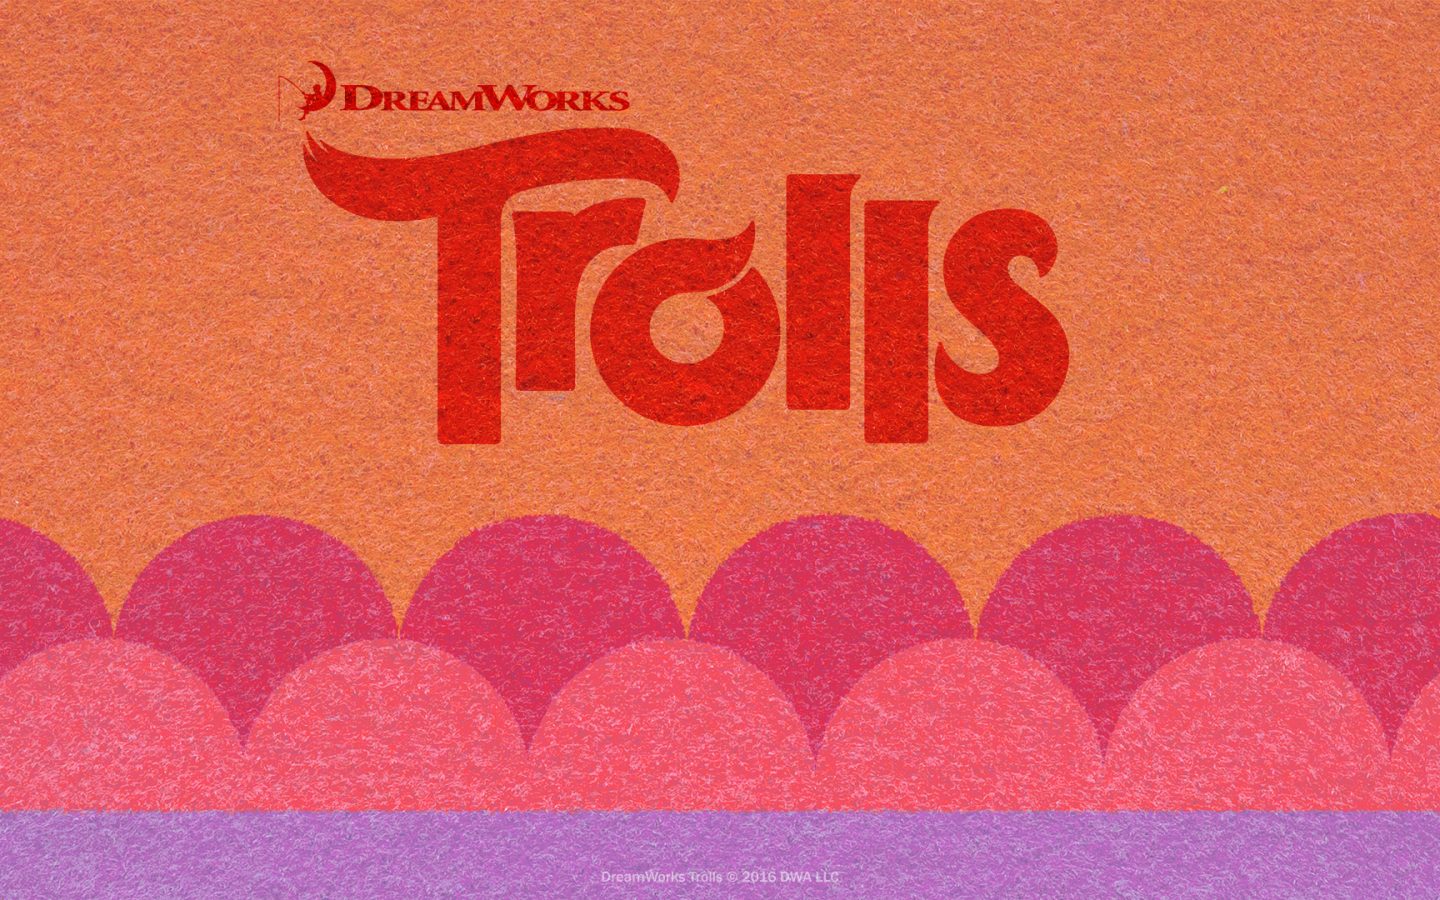 Trolls Dreamworks Wallpaper Hd , HD Wallpaper & Backgrounds